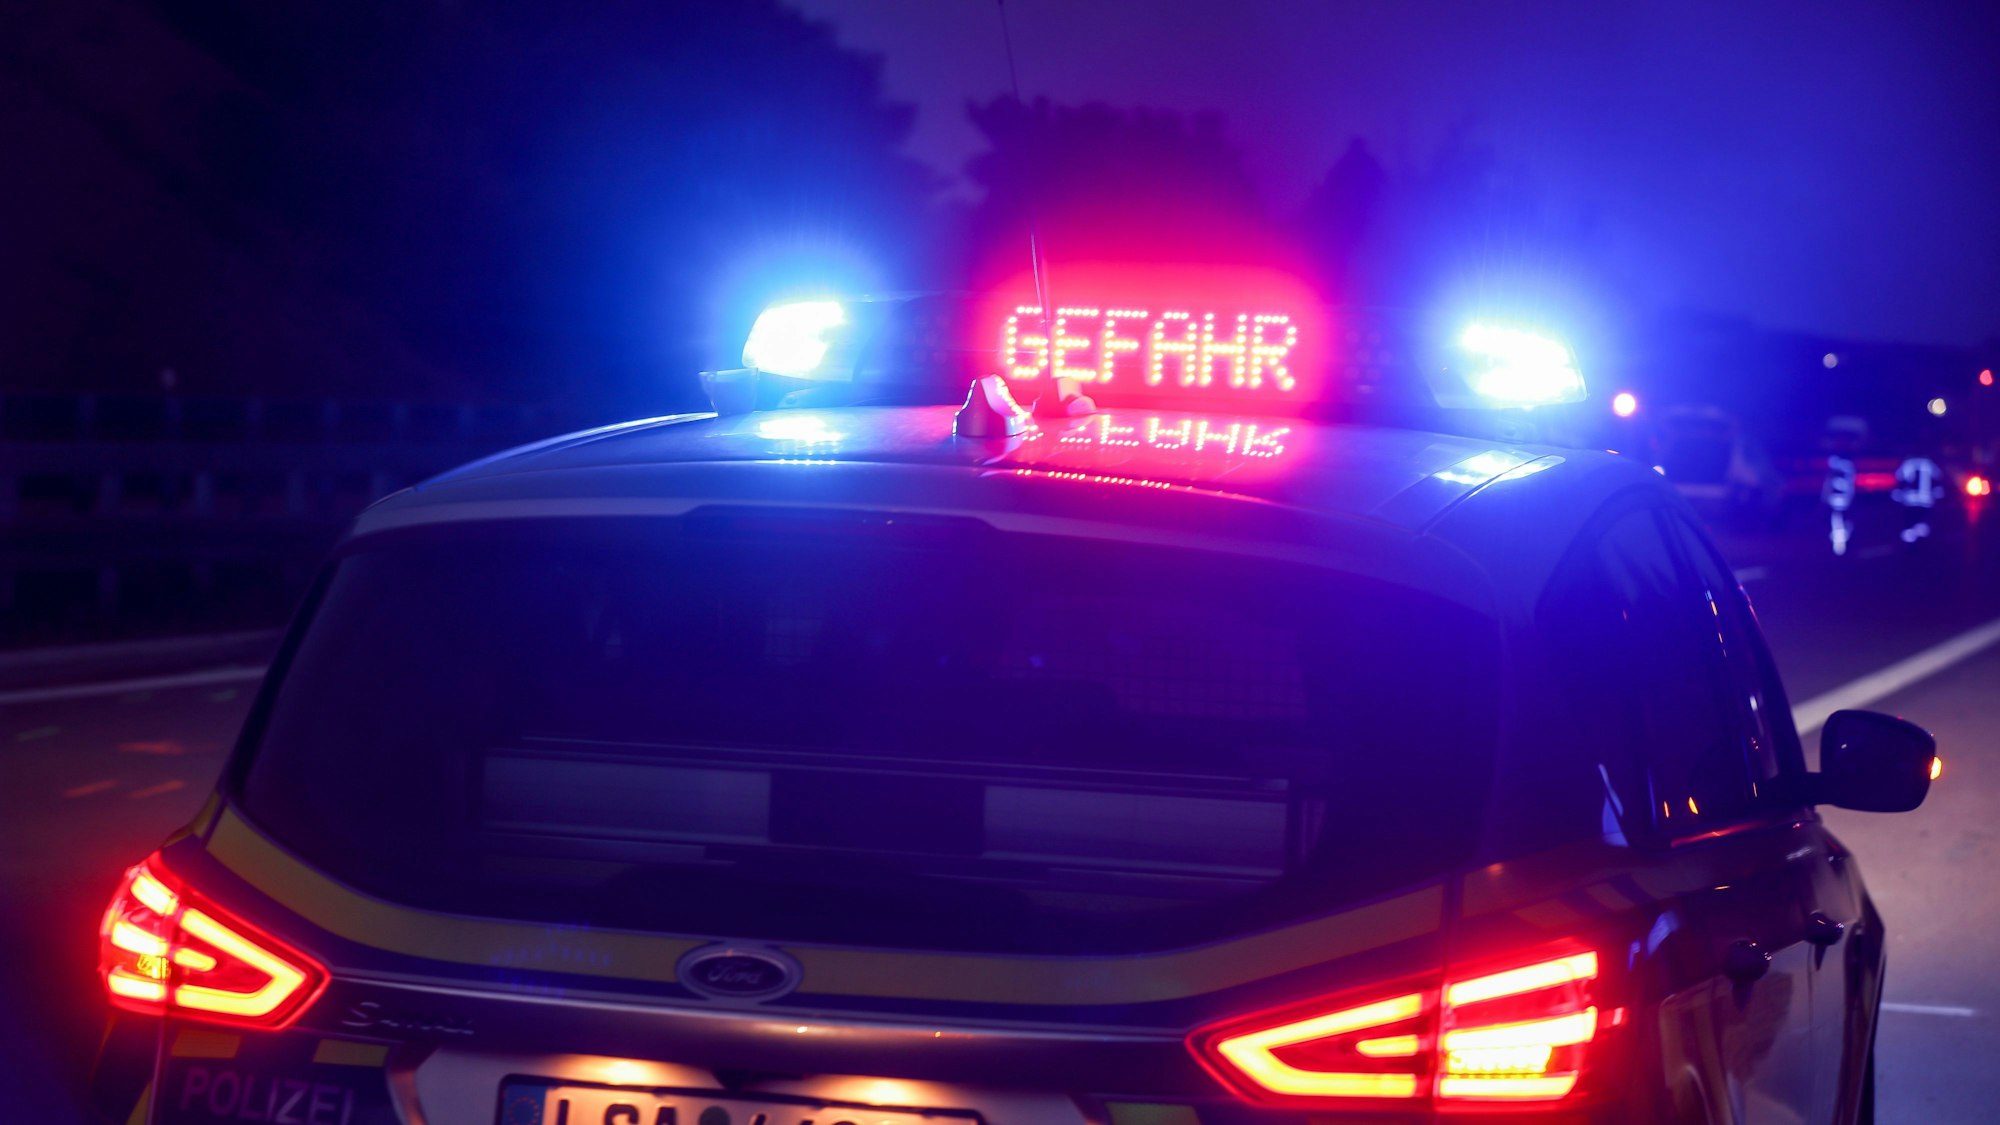 Ein Polizeiauto hat das Blaulicht an, außerdem ist in roten Buchstaben „Gefahr“ auf dem Dach des Einsatzwagens zu lesen. Im Hintergrund ist eine Unfallstelle zu sehen. (Symbolbild)